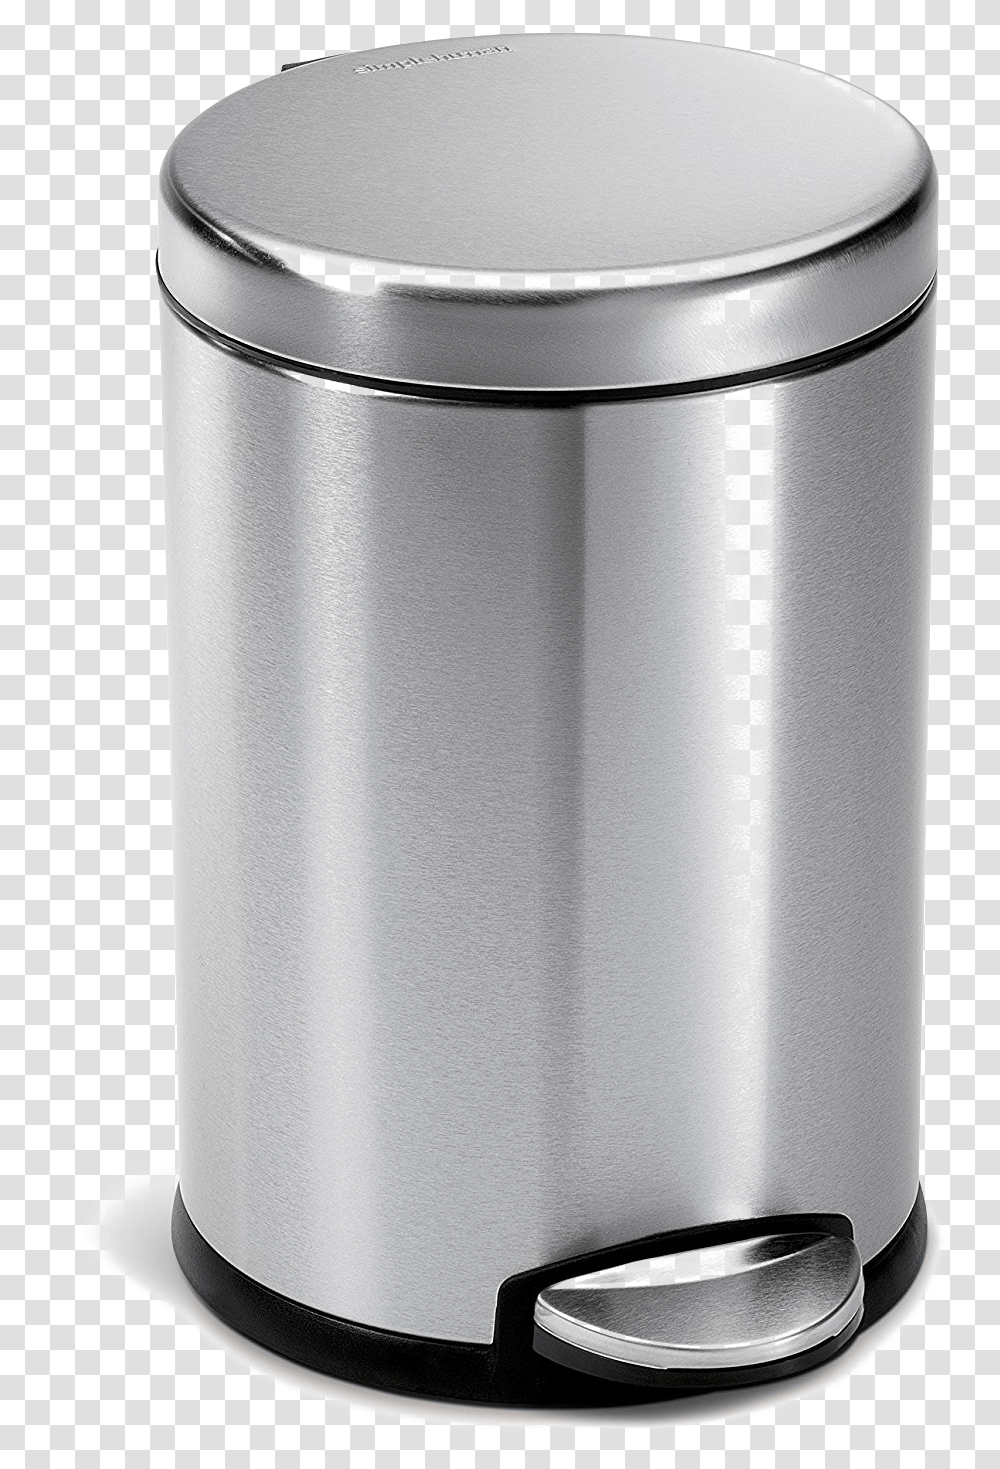 Trash Can Stainless Steel Garbage Bin, Shaker, Bottle, Barrel, Milk Transparent Png